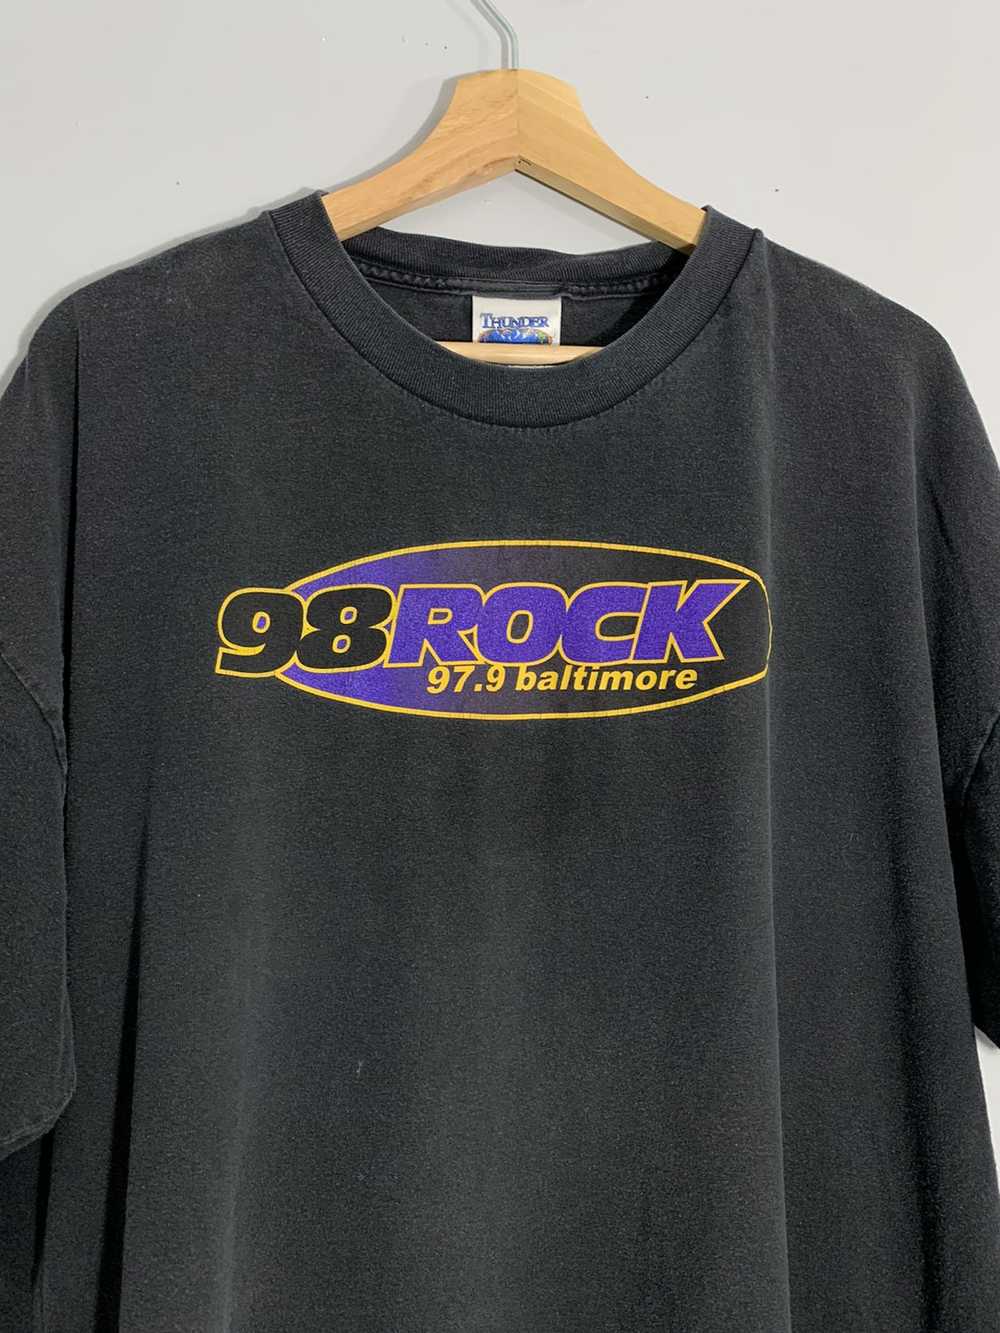 Streetwear × Vintage 98 Rock Baltimore T Shirt - image 1